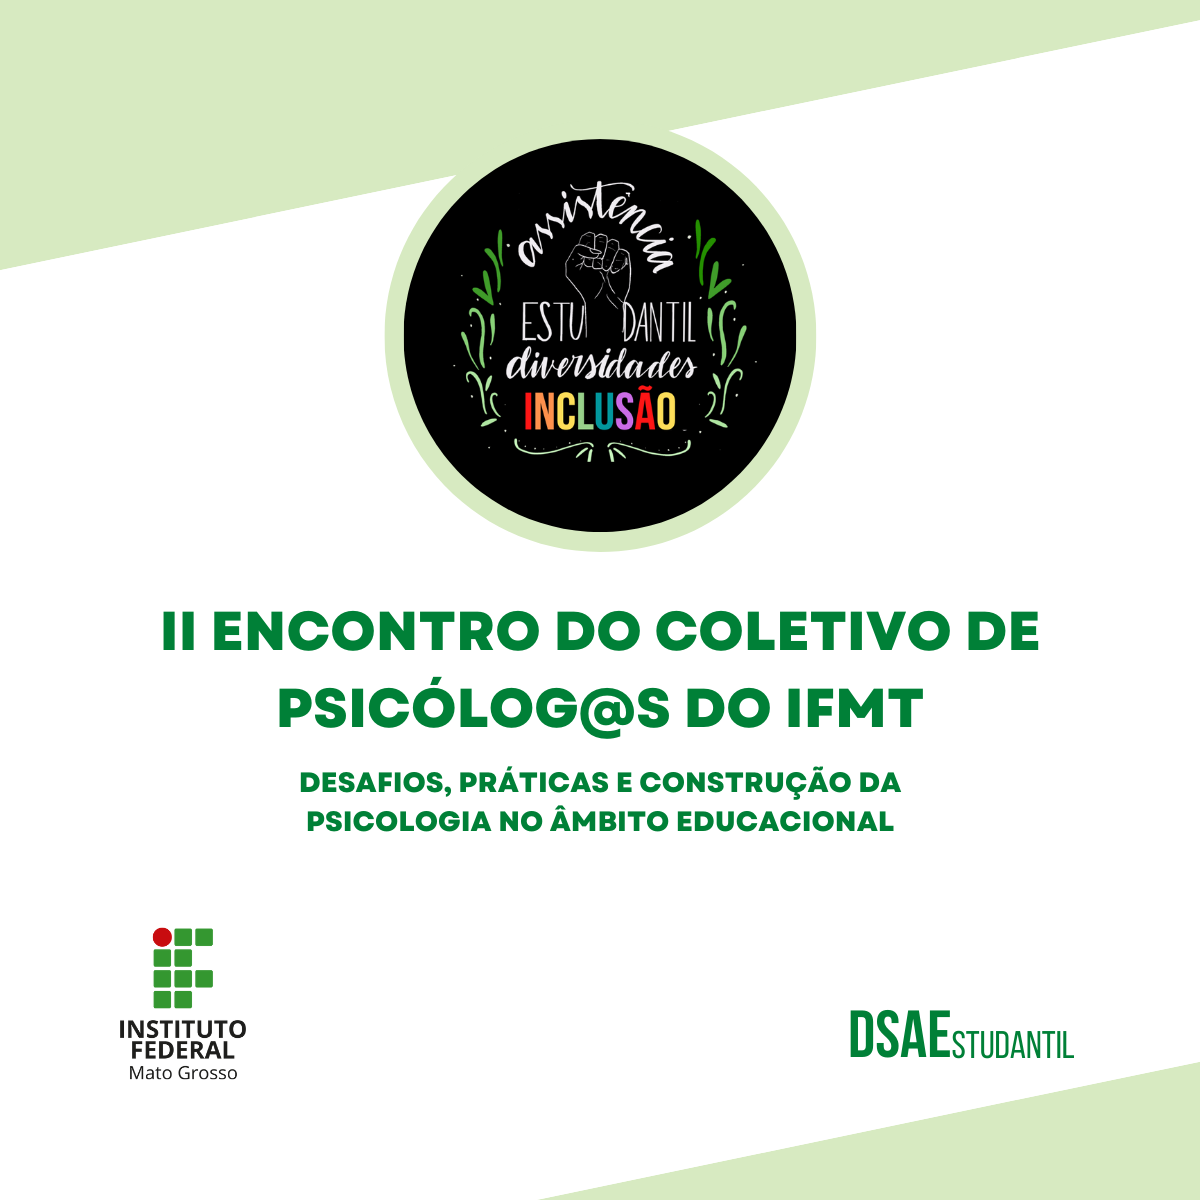 II Encontro do Coletivo de Psicólog@s do IFMT: Desafios, Práticas e Construção da Psicologia no Âmbito Educacional